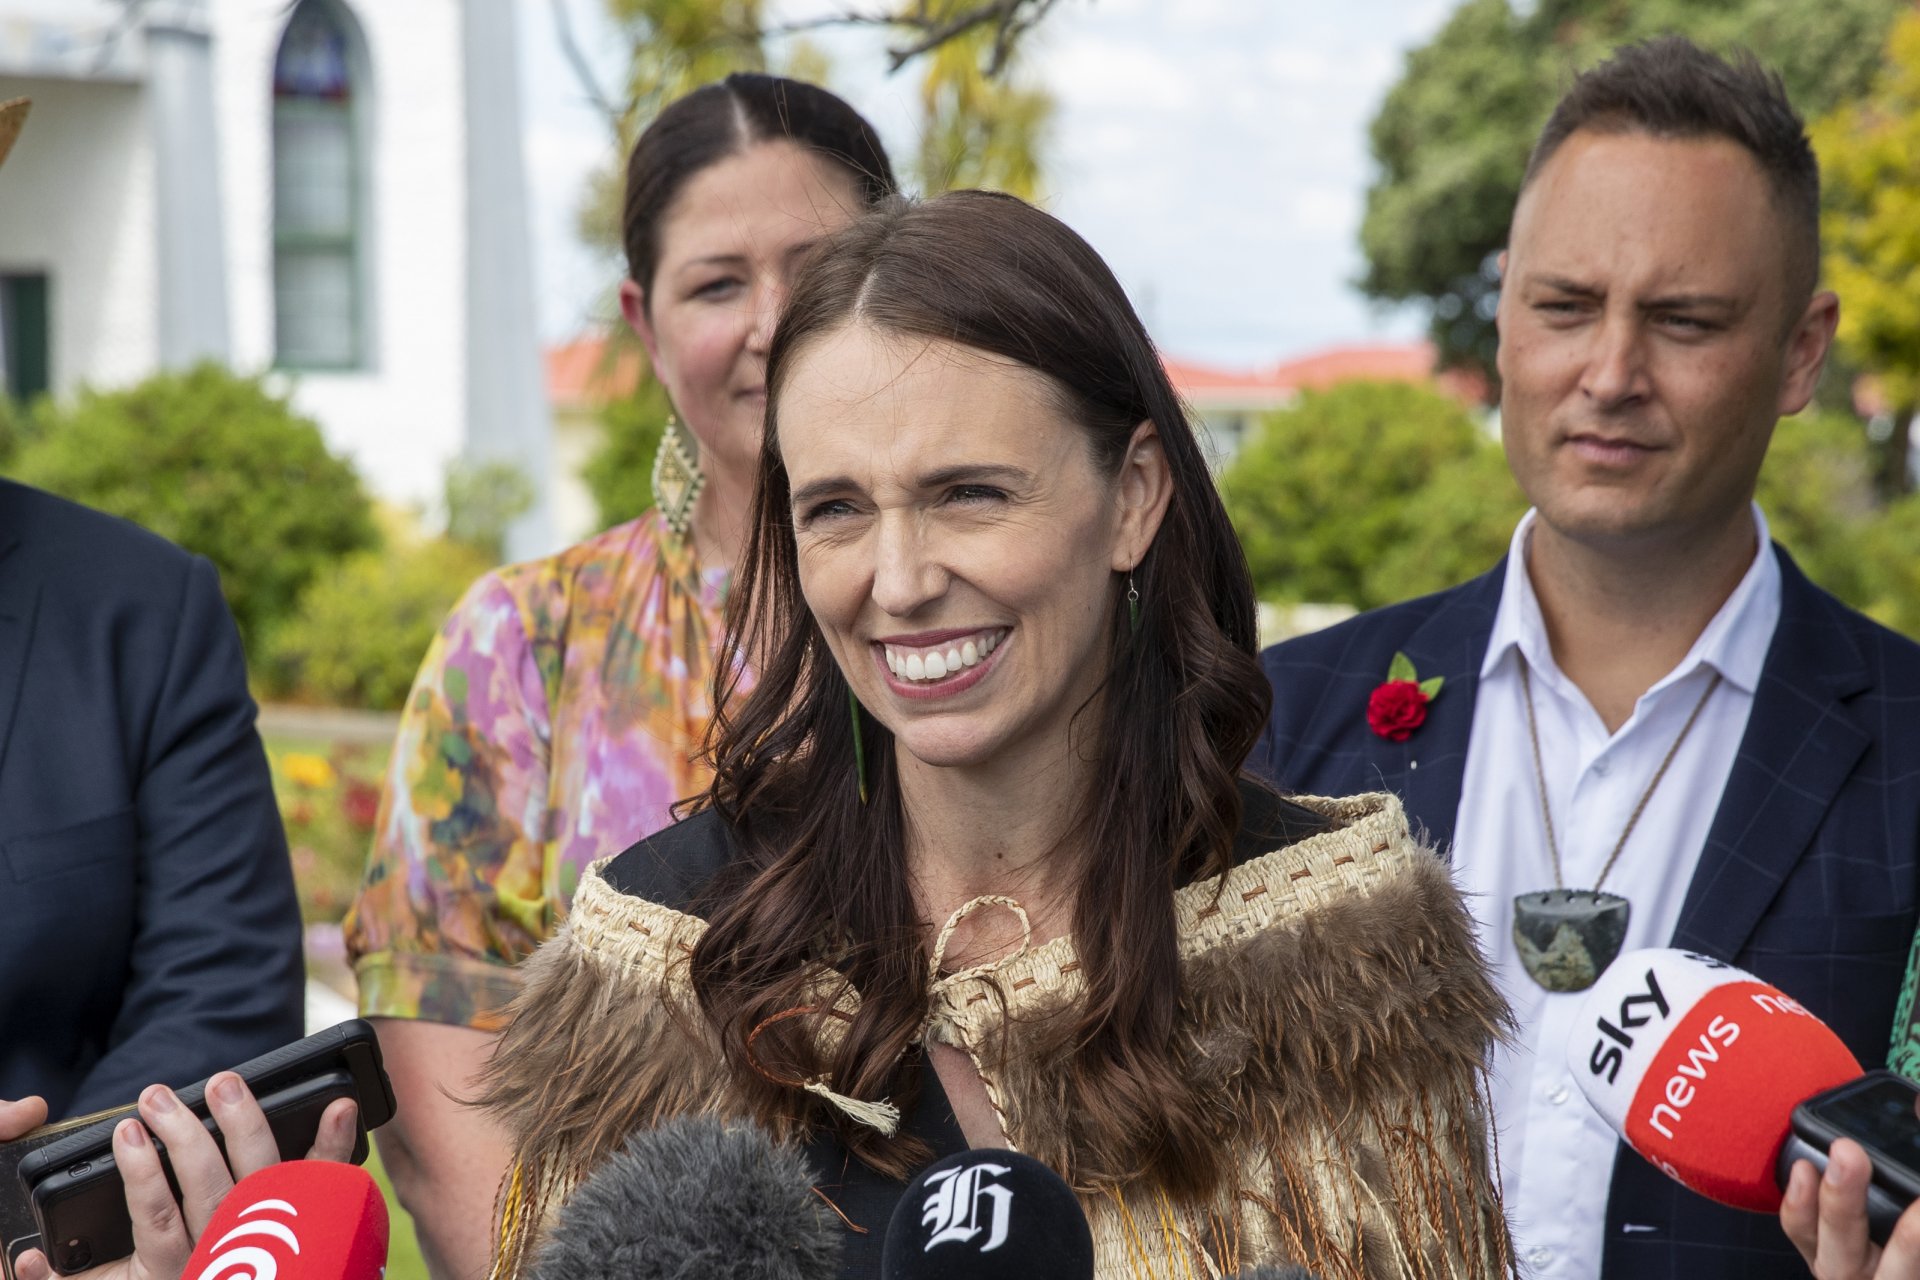 Ардърн направи последната си публична изява като министър-председател на Нова Зеландия във вторник